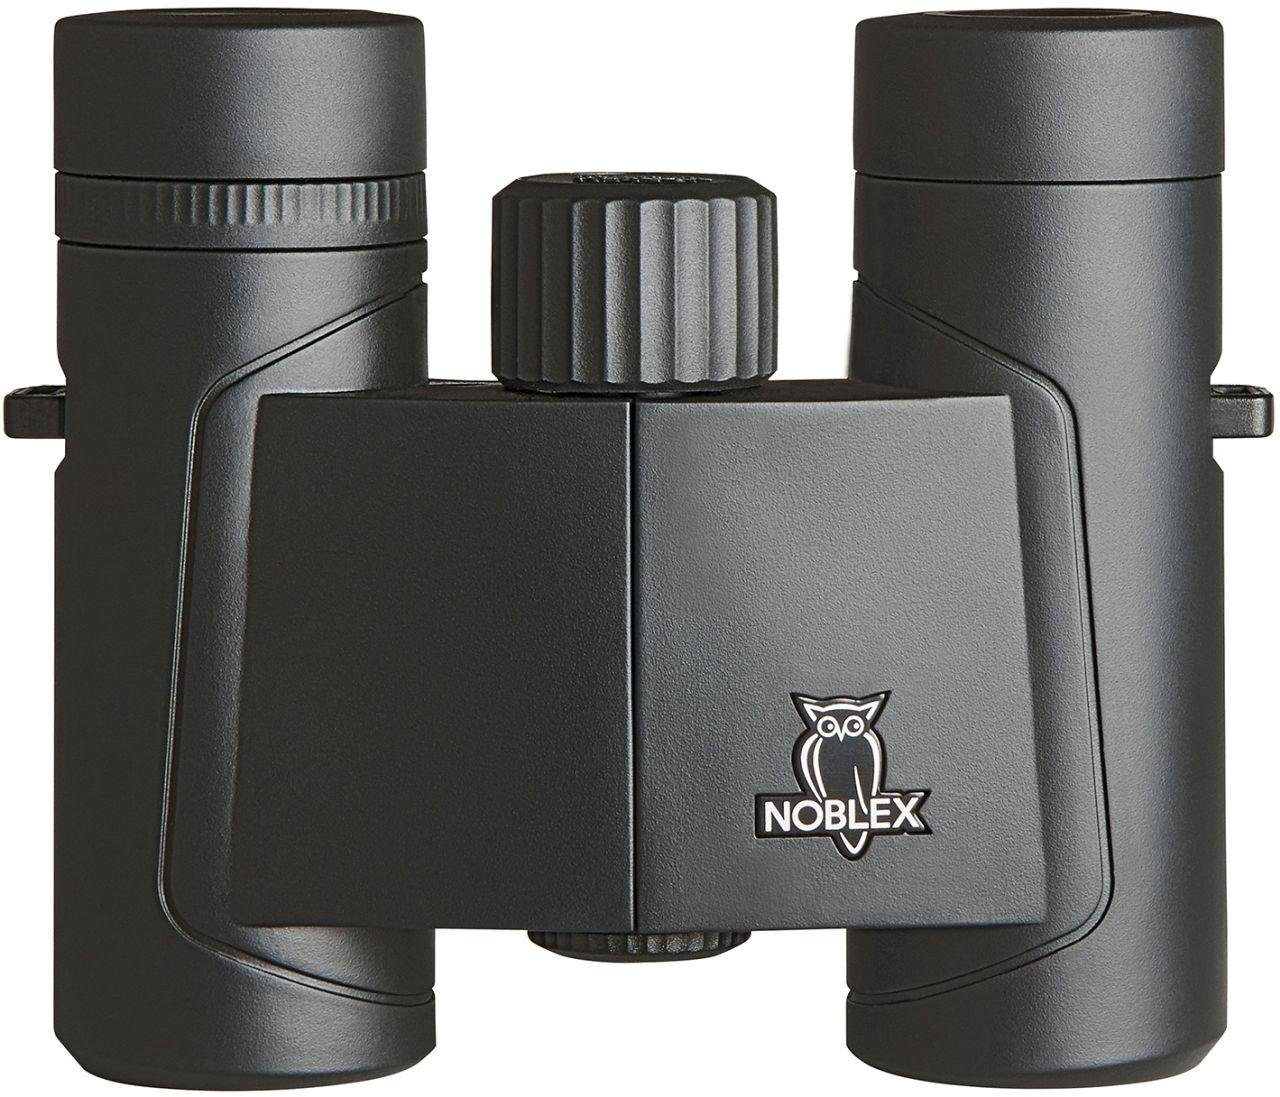 Noblex NF 8x42 vector Fernglas